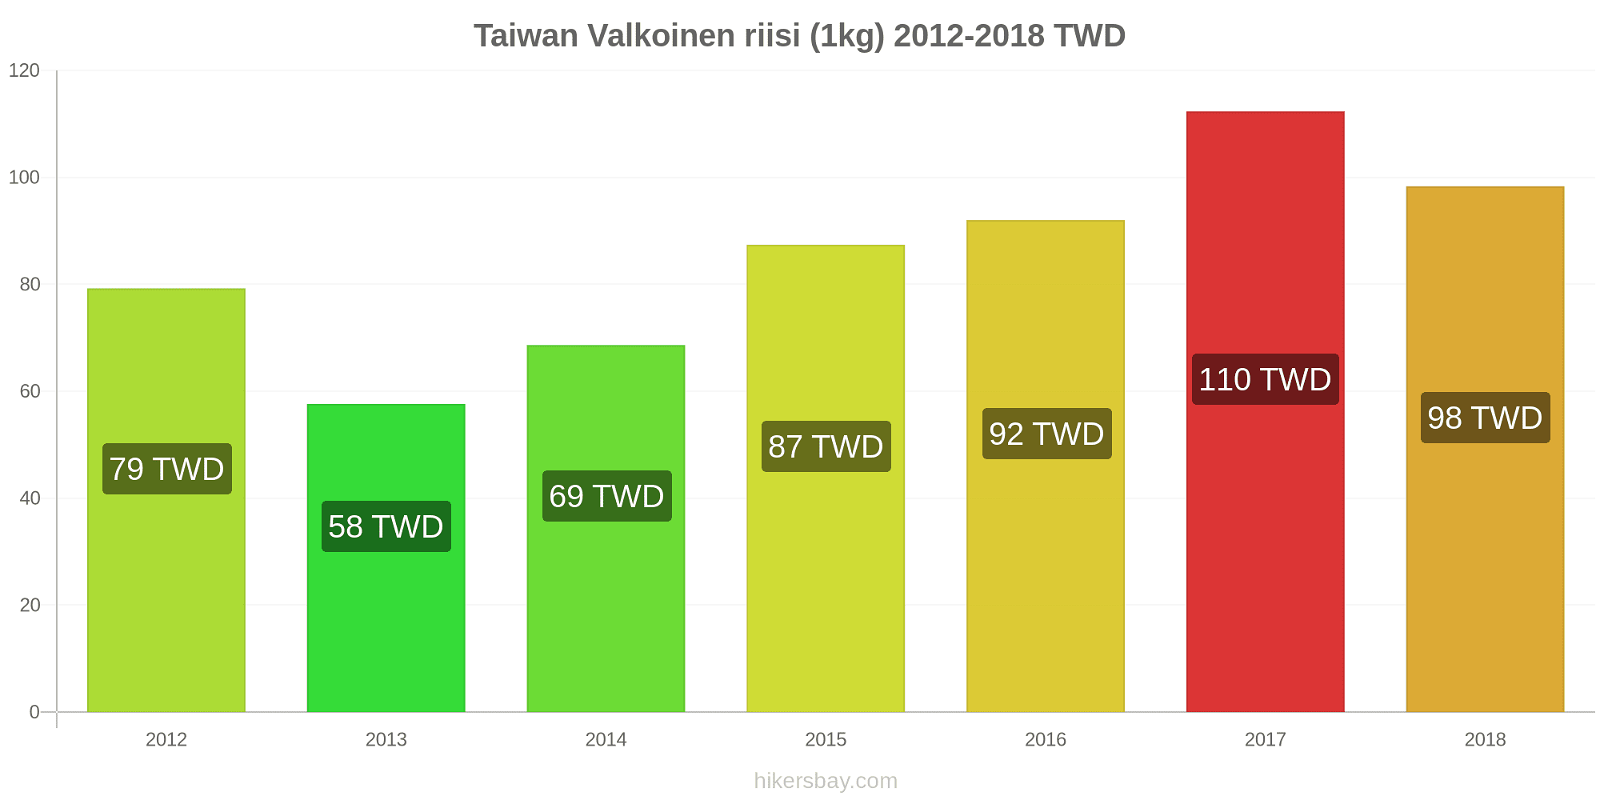 Taiwan hintojen muutokset Valkoinen riisi (1kg) hikersbay.com